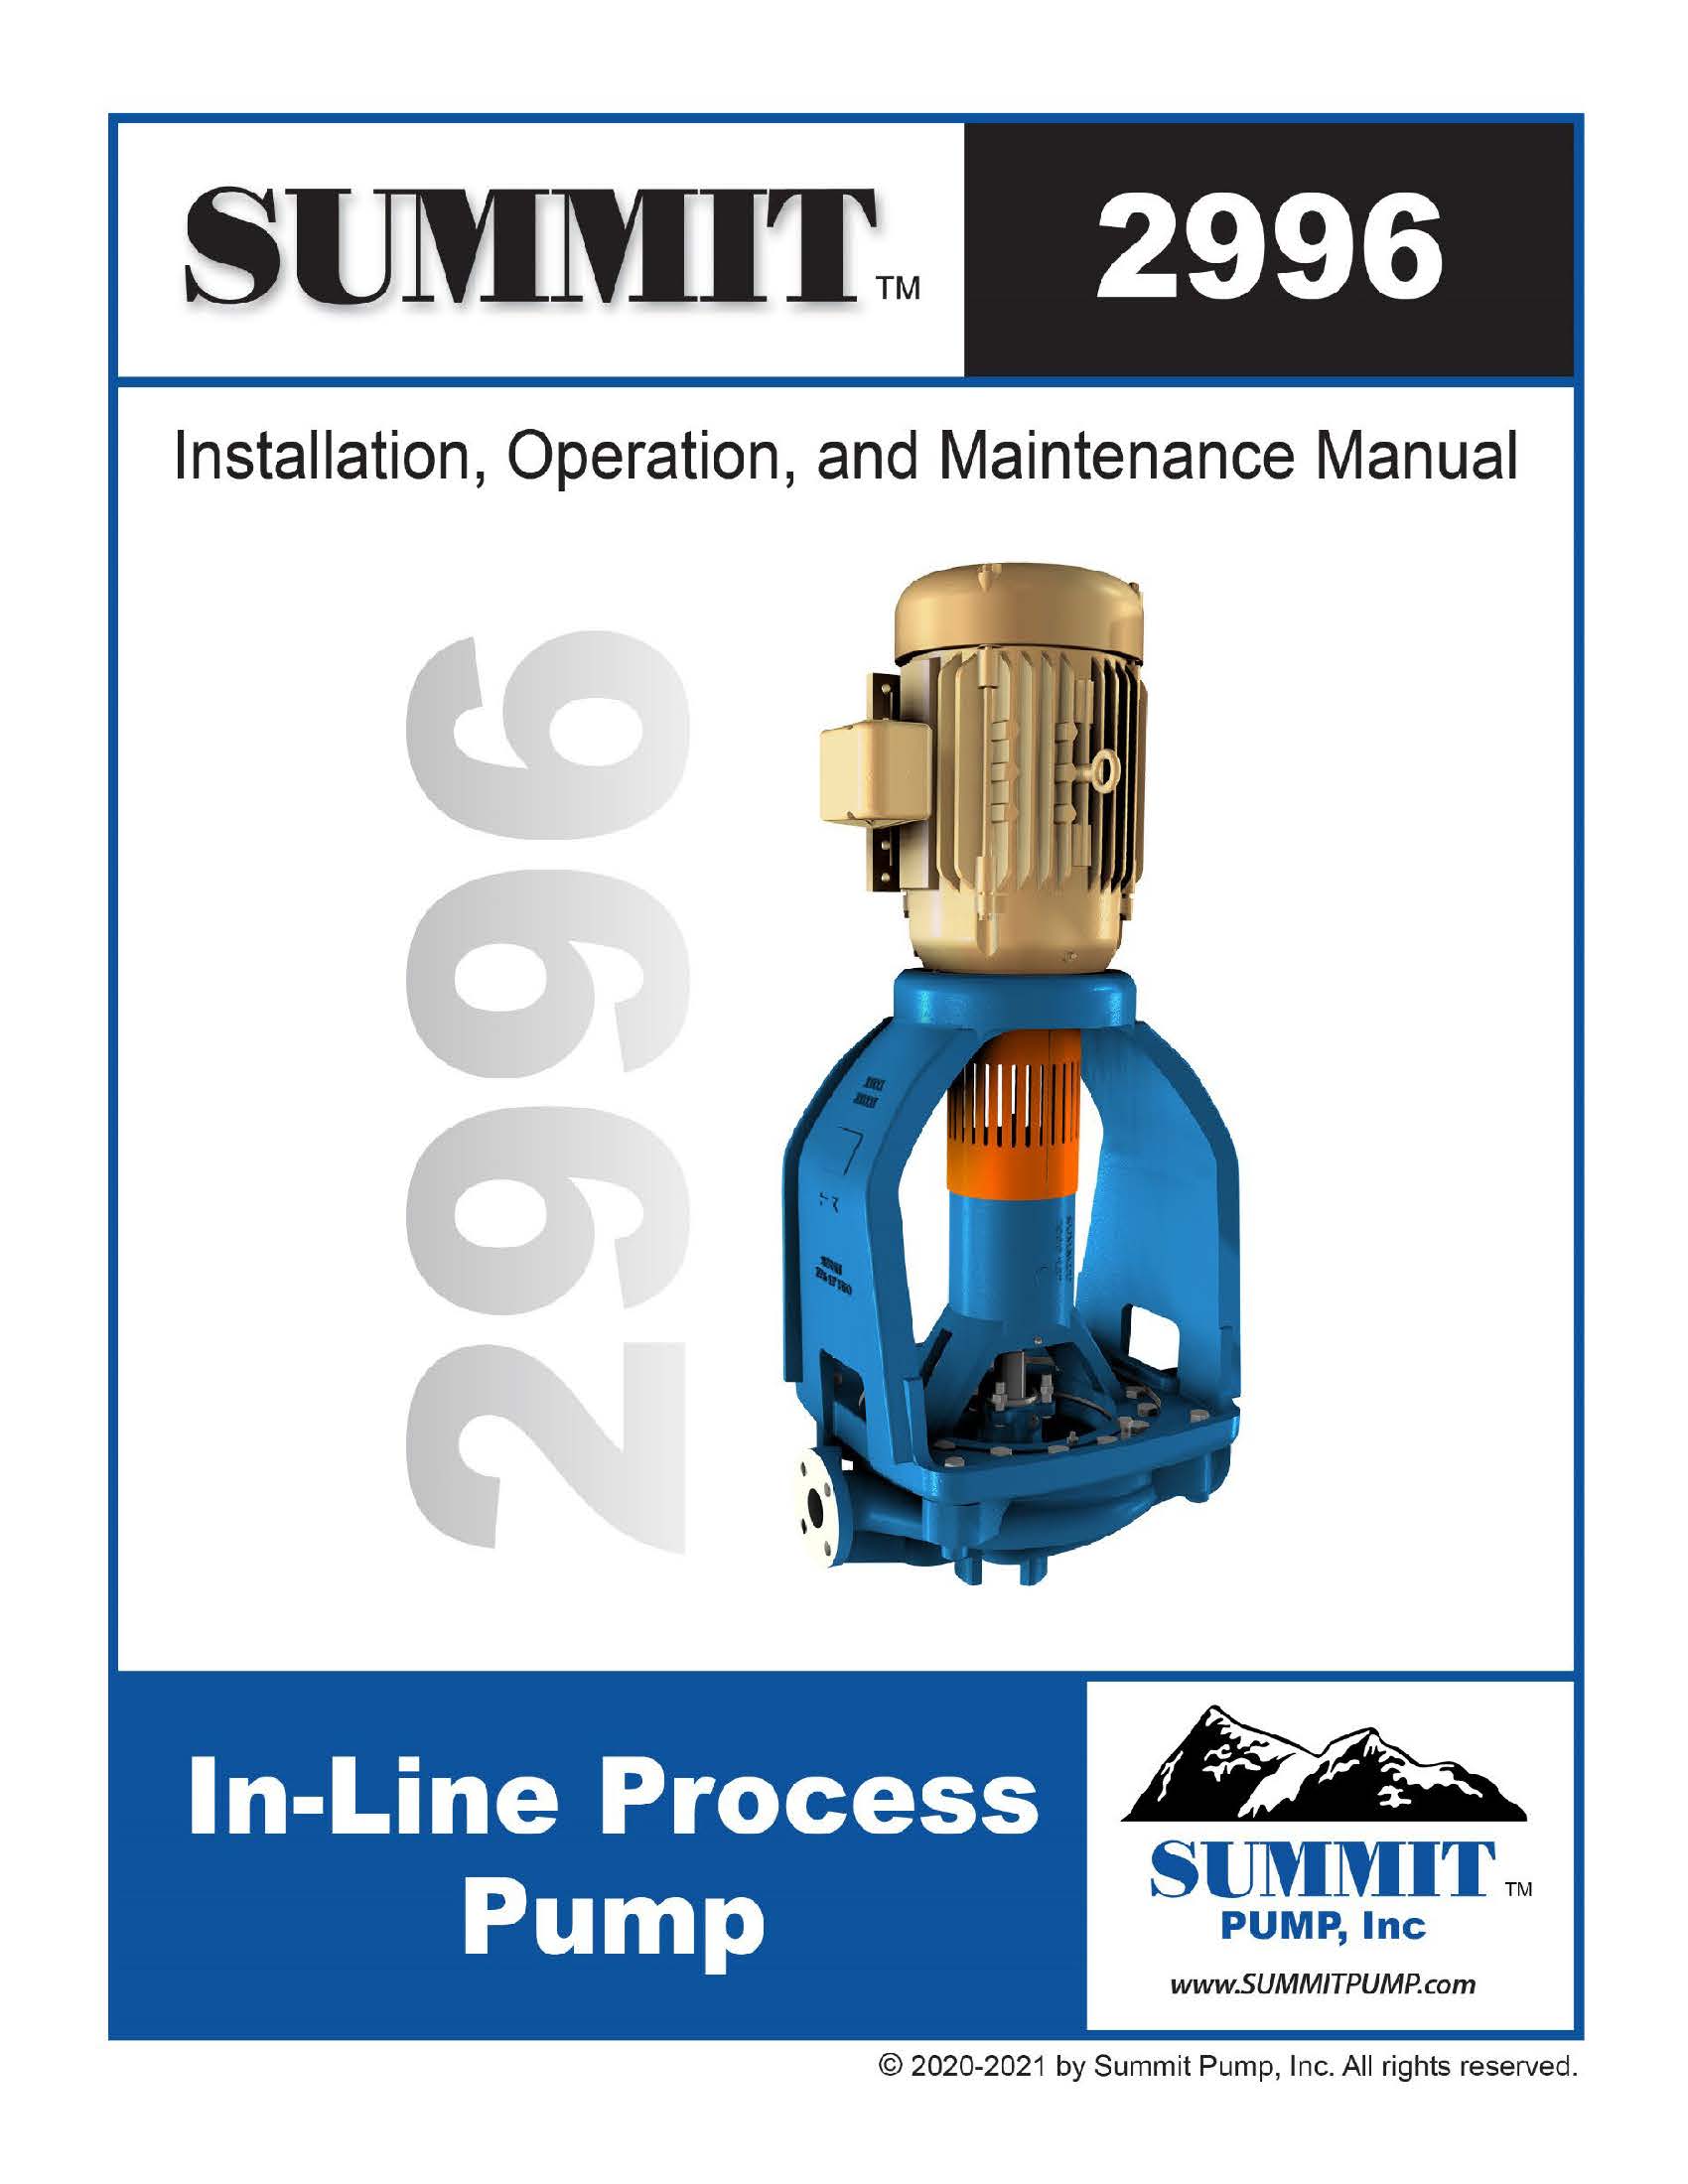 Summit 2996 ANSI Pump Manual - English